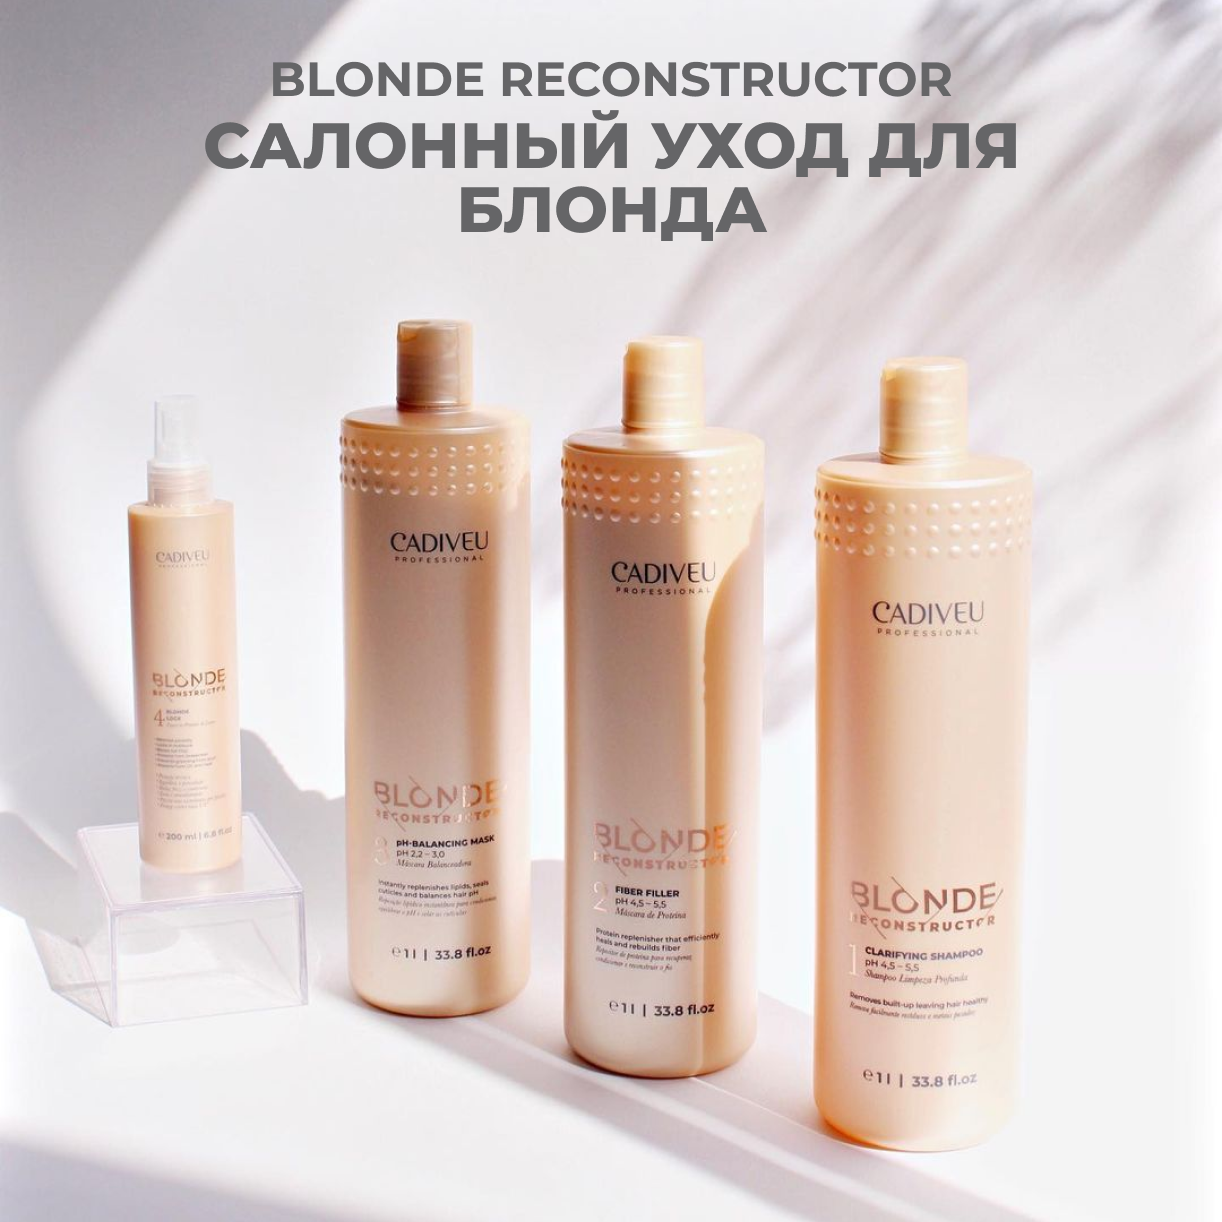 Cadiveu Blonde Reconstructor Professional Kit Профессиональный уход (4 продукта)